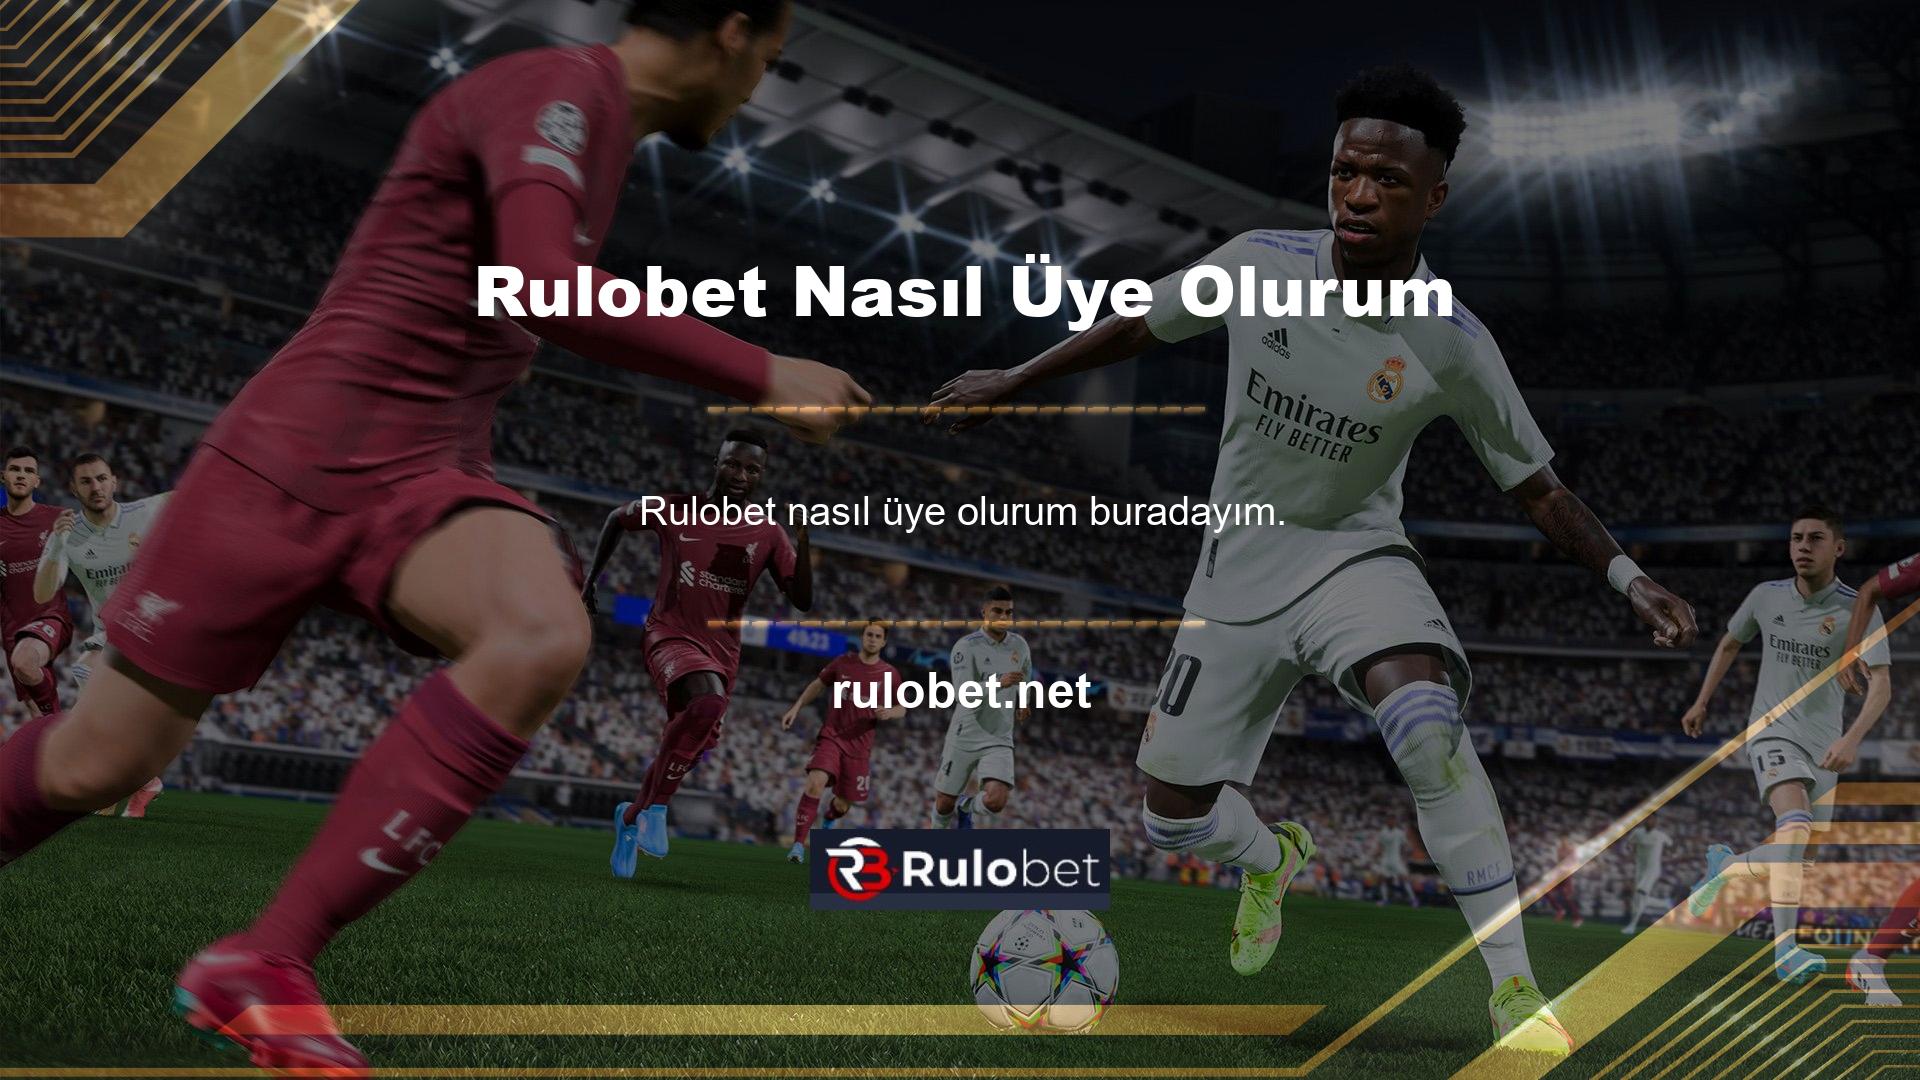 Bilmeyenler için Rulobet, bahisçiler için aracılık yapan bir online casinodur